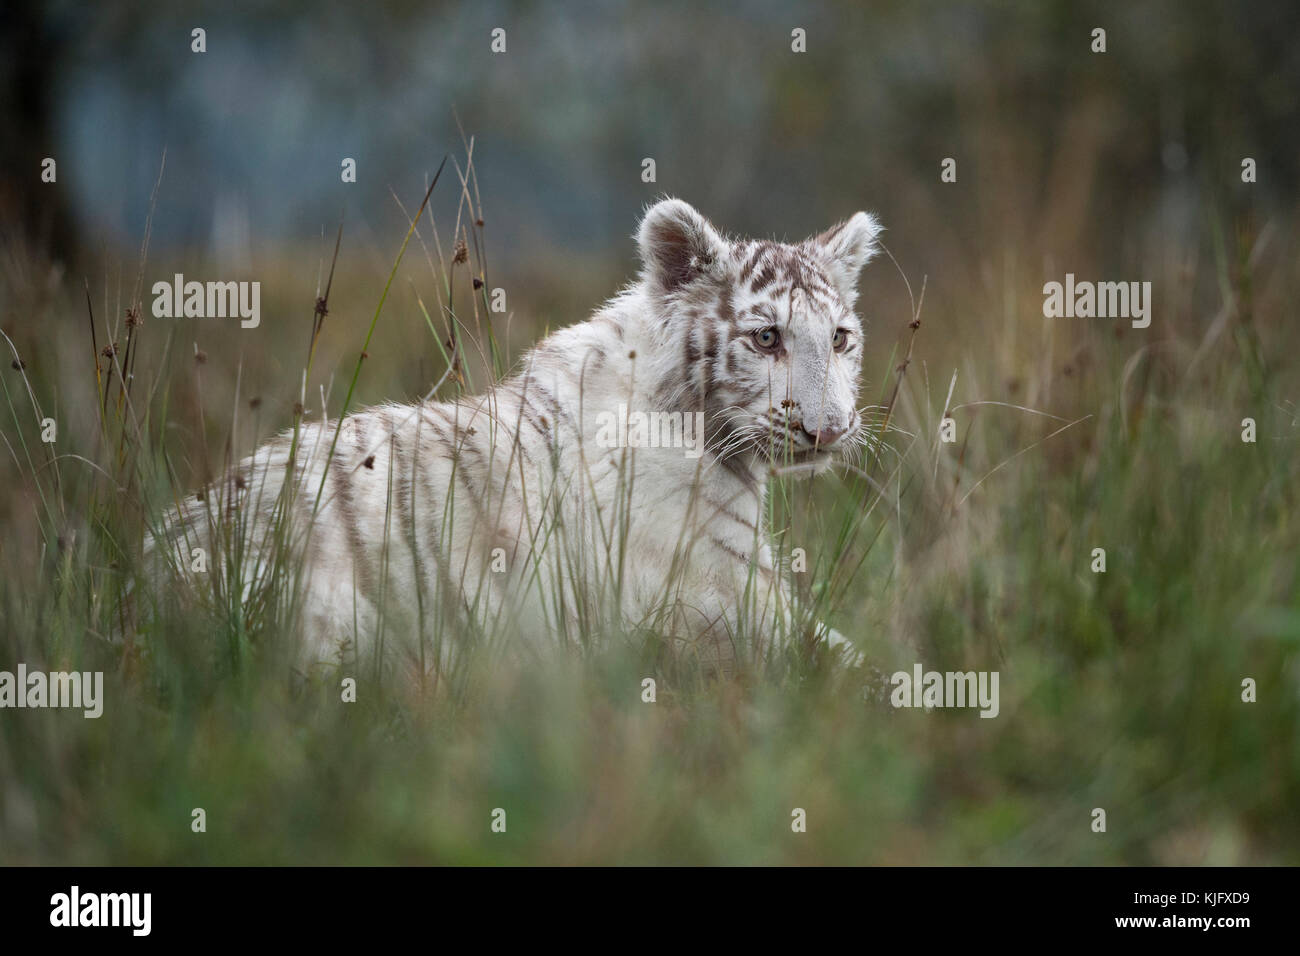 Königlicher Bengaltiger ( Panthera tigris ), weißes Tier, Spaziergang durch hohe Grasflächen, Seitenansicht in typischer Umgebung, niedriger Blickwinkel. Stockfoto